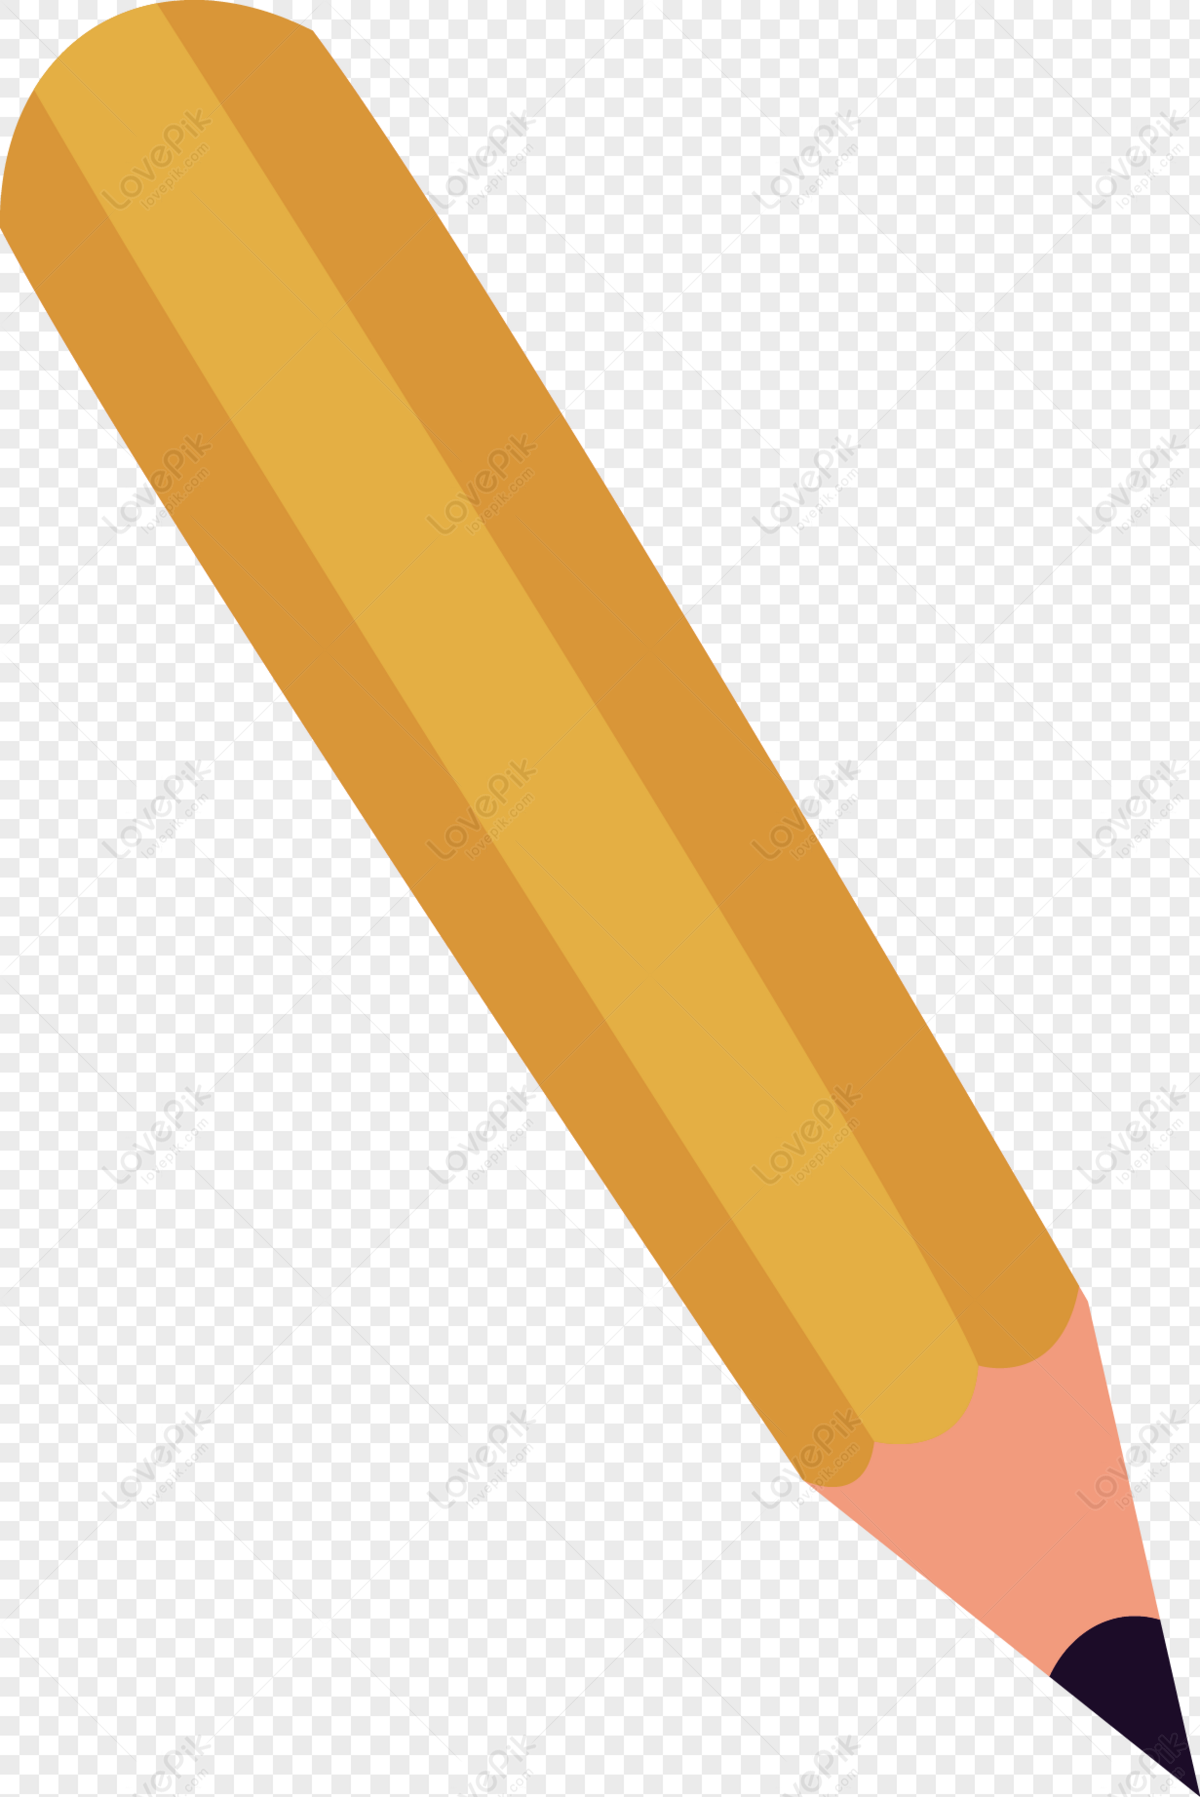 Карандашек или карандашик как. Макет карандаша. Яркие карандаши нанесение лого. Строчка от карандаша картинка PNG.